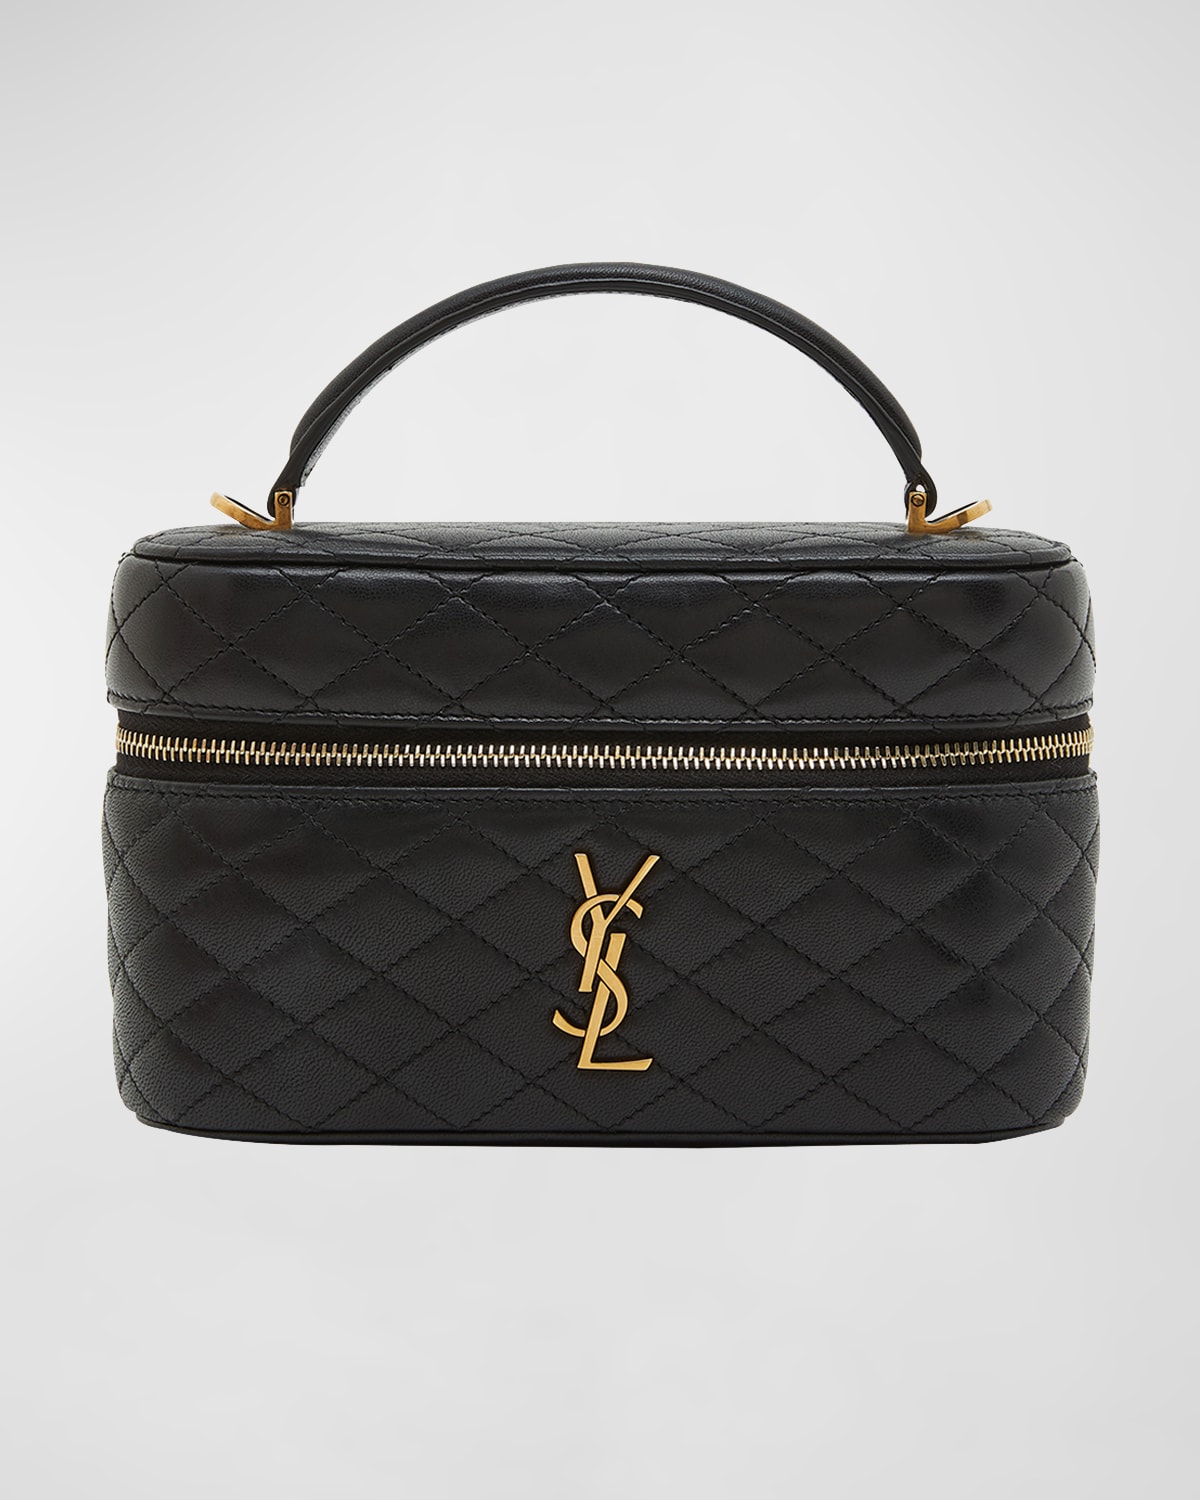 Joe Mini YSL Bucket Bag in Smooth Leather